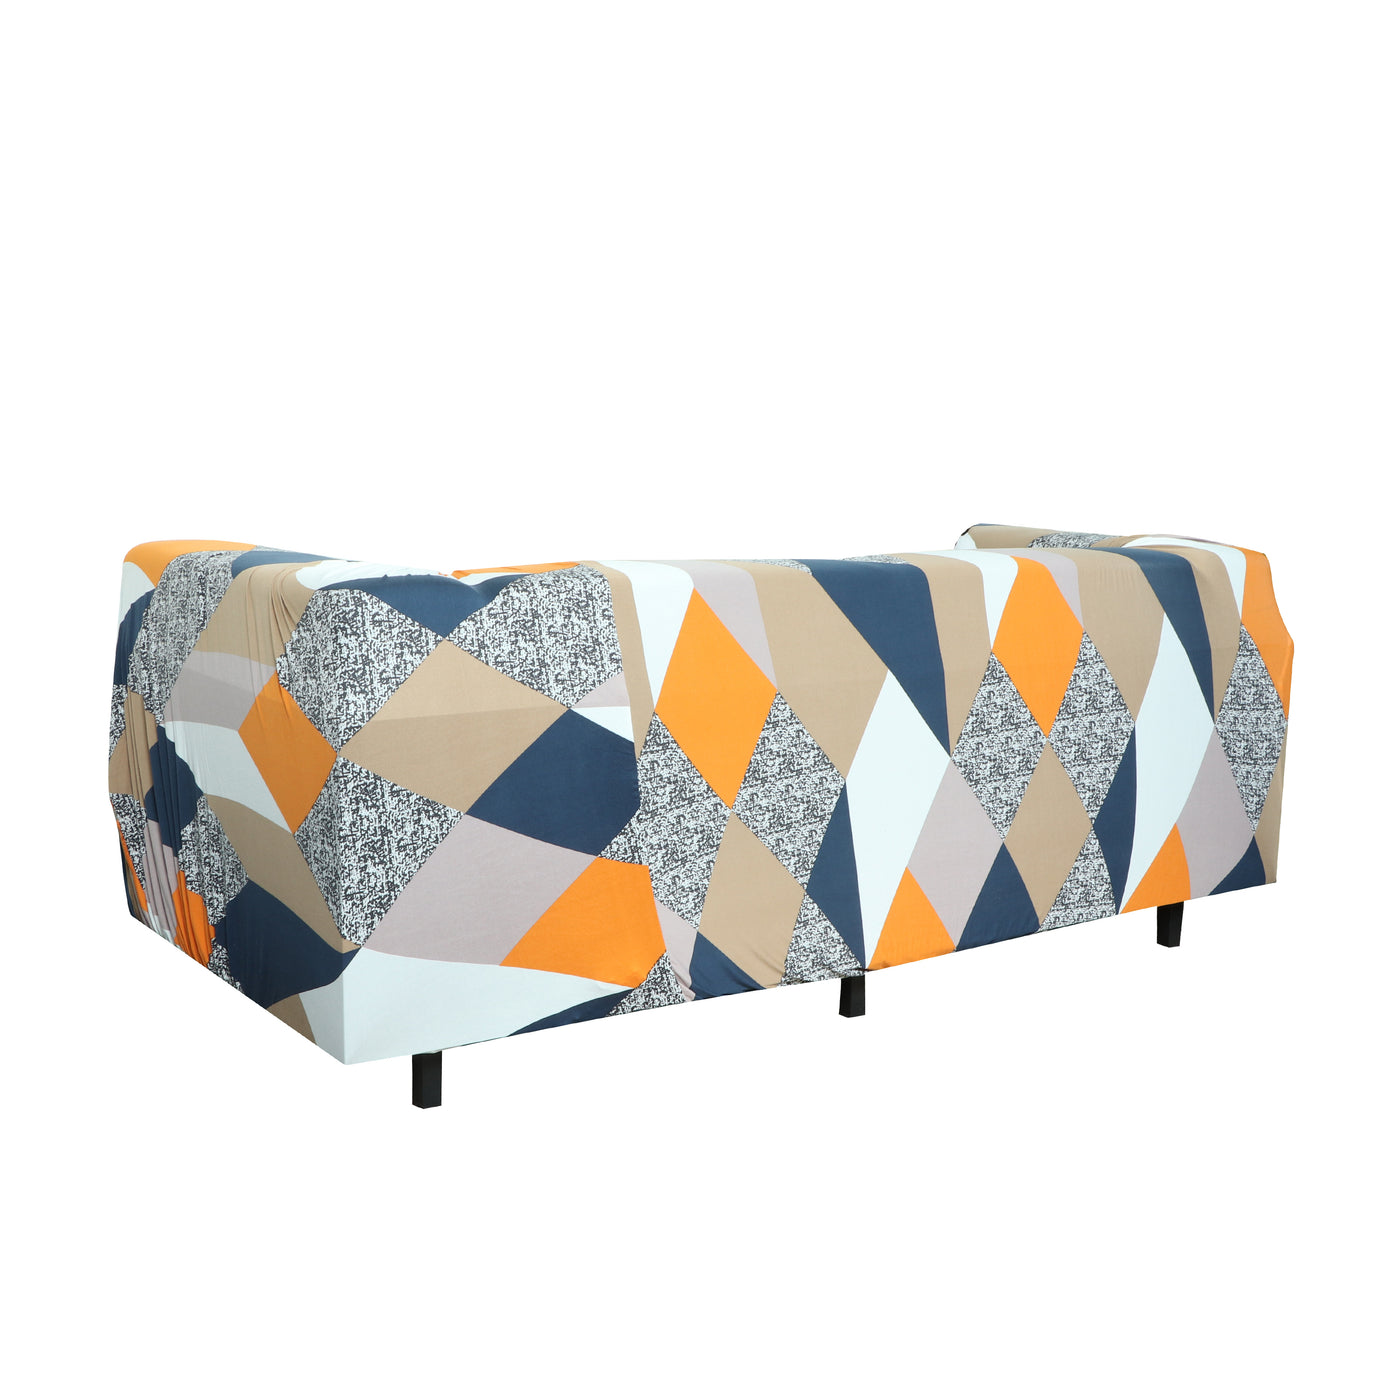 Printed Sofa Cover - Multi Prism